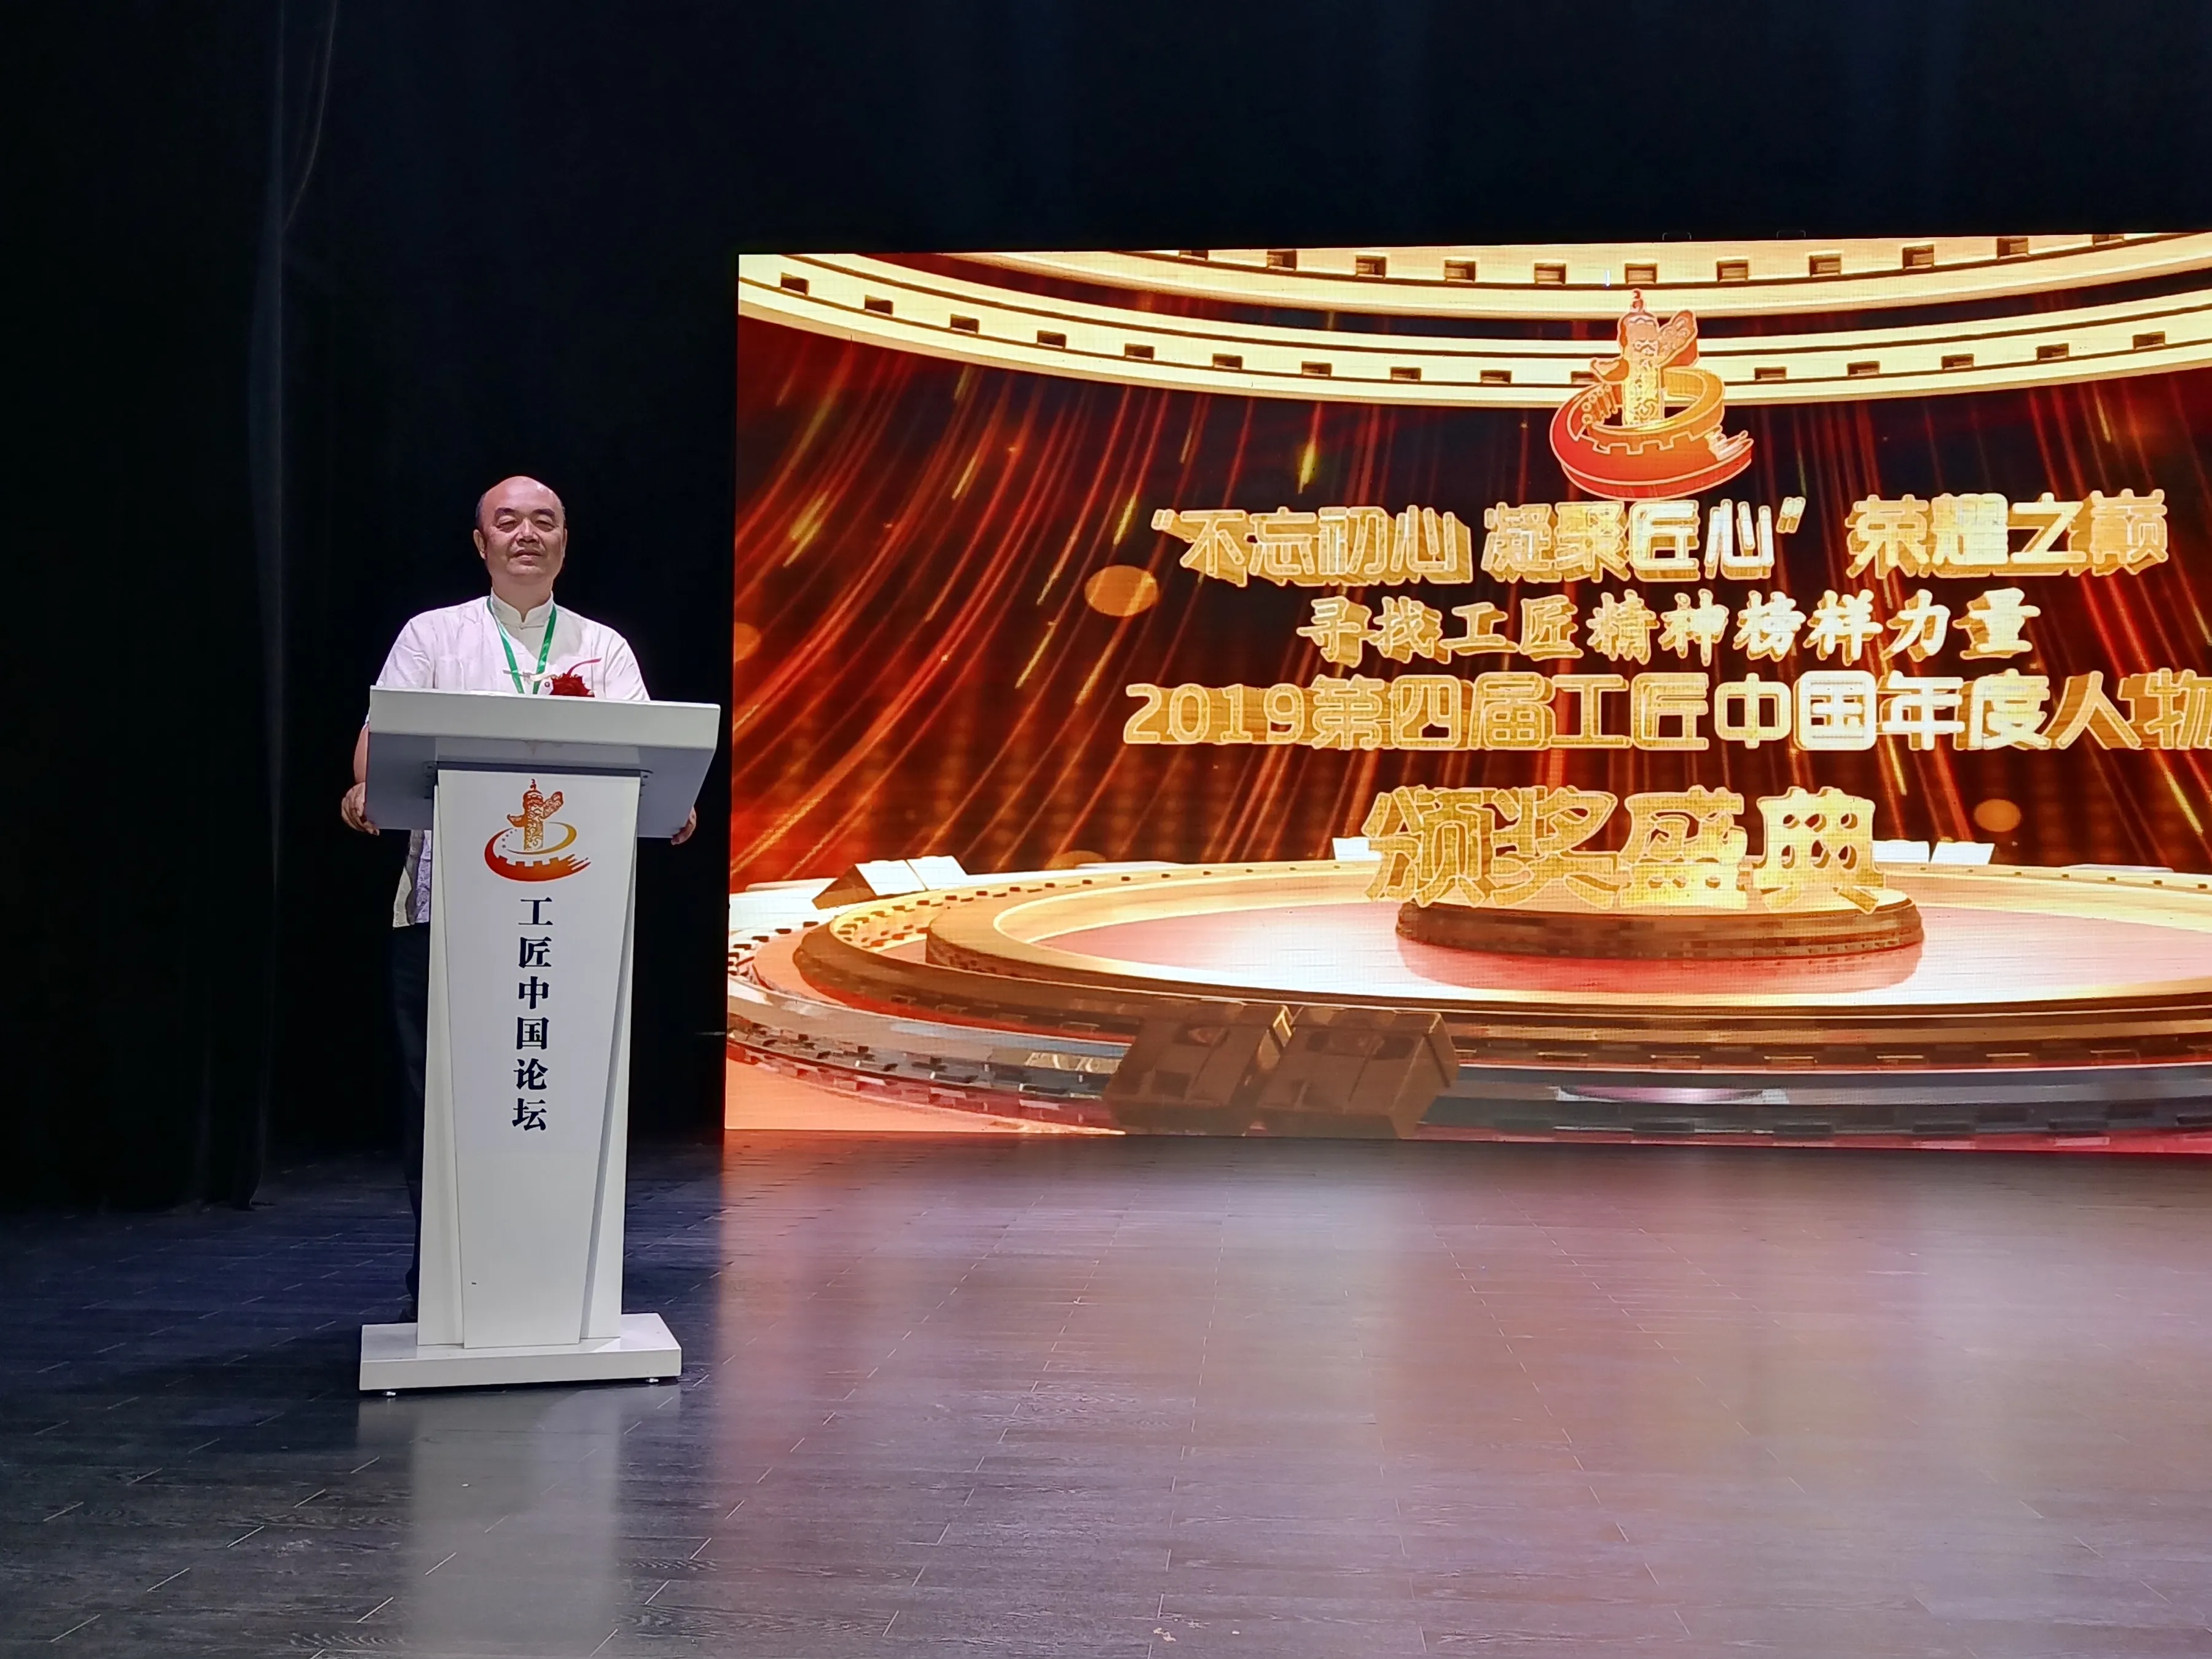 第四届工匠中国论坛年度人物盛典北京举行 李家民荣获十大国匠称号